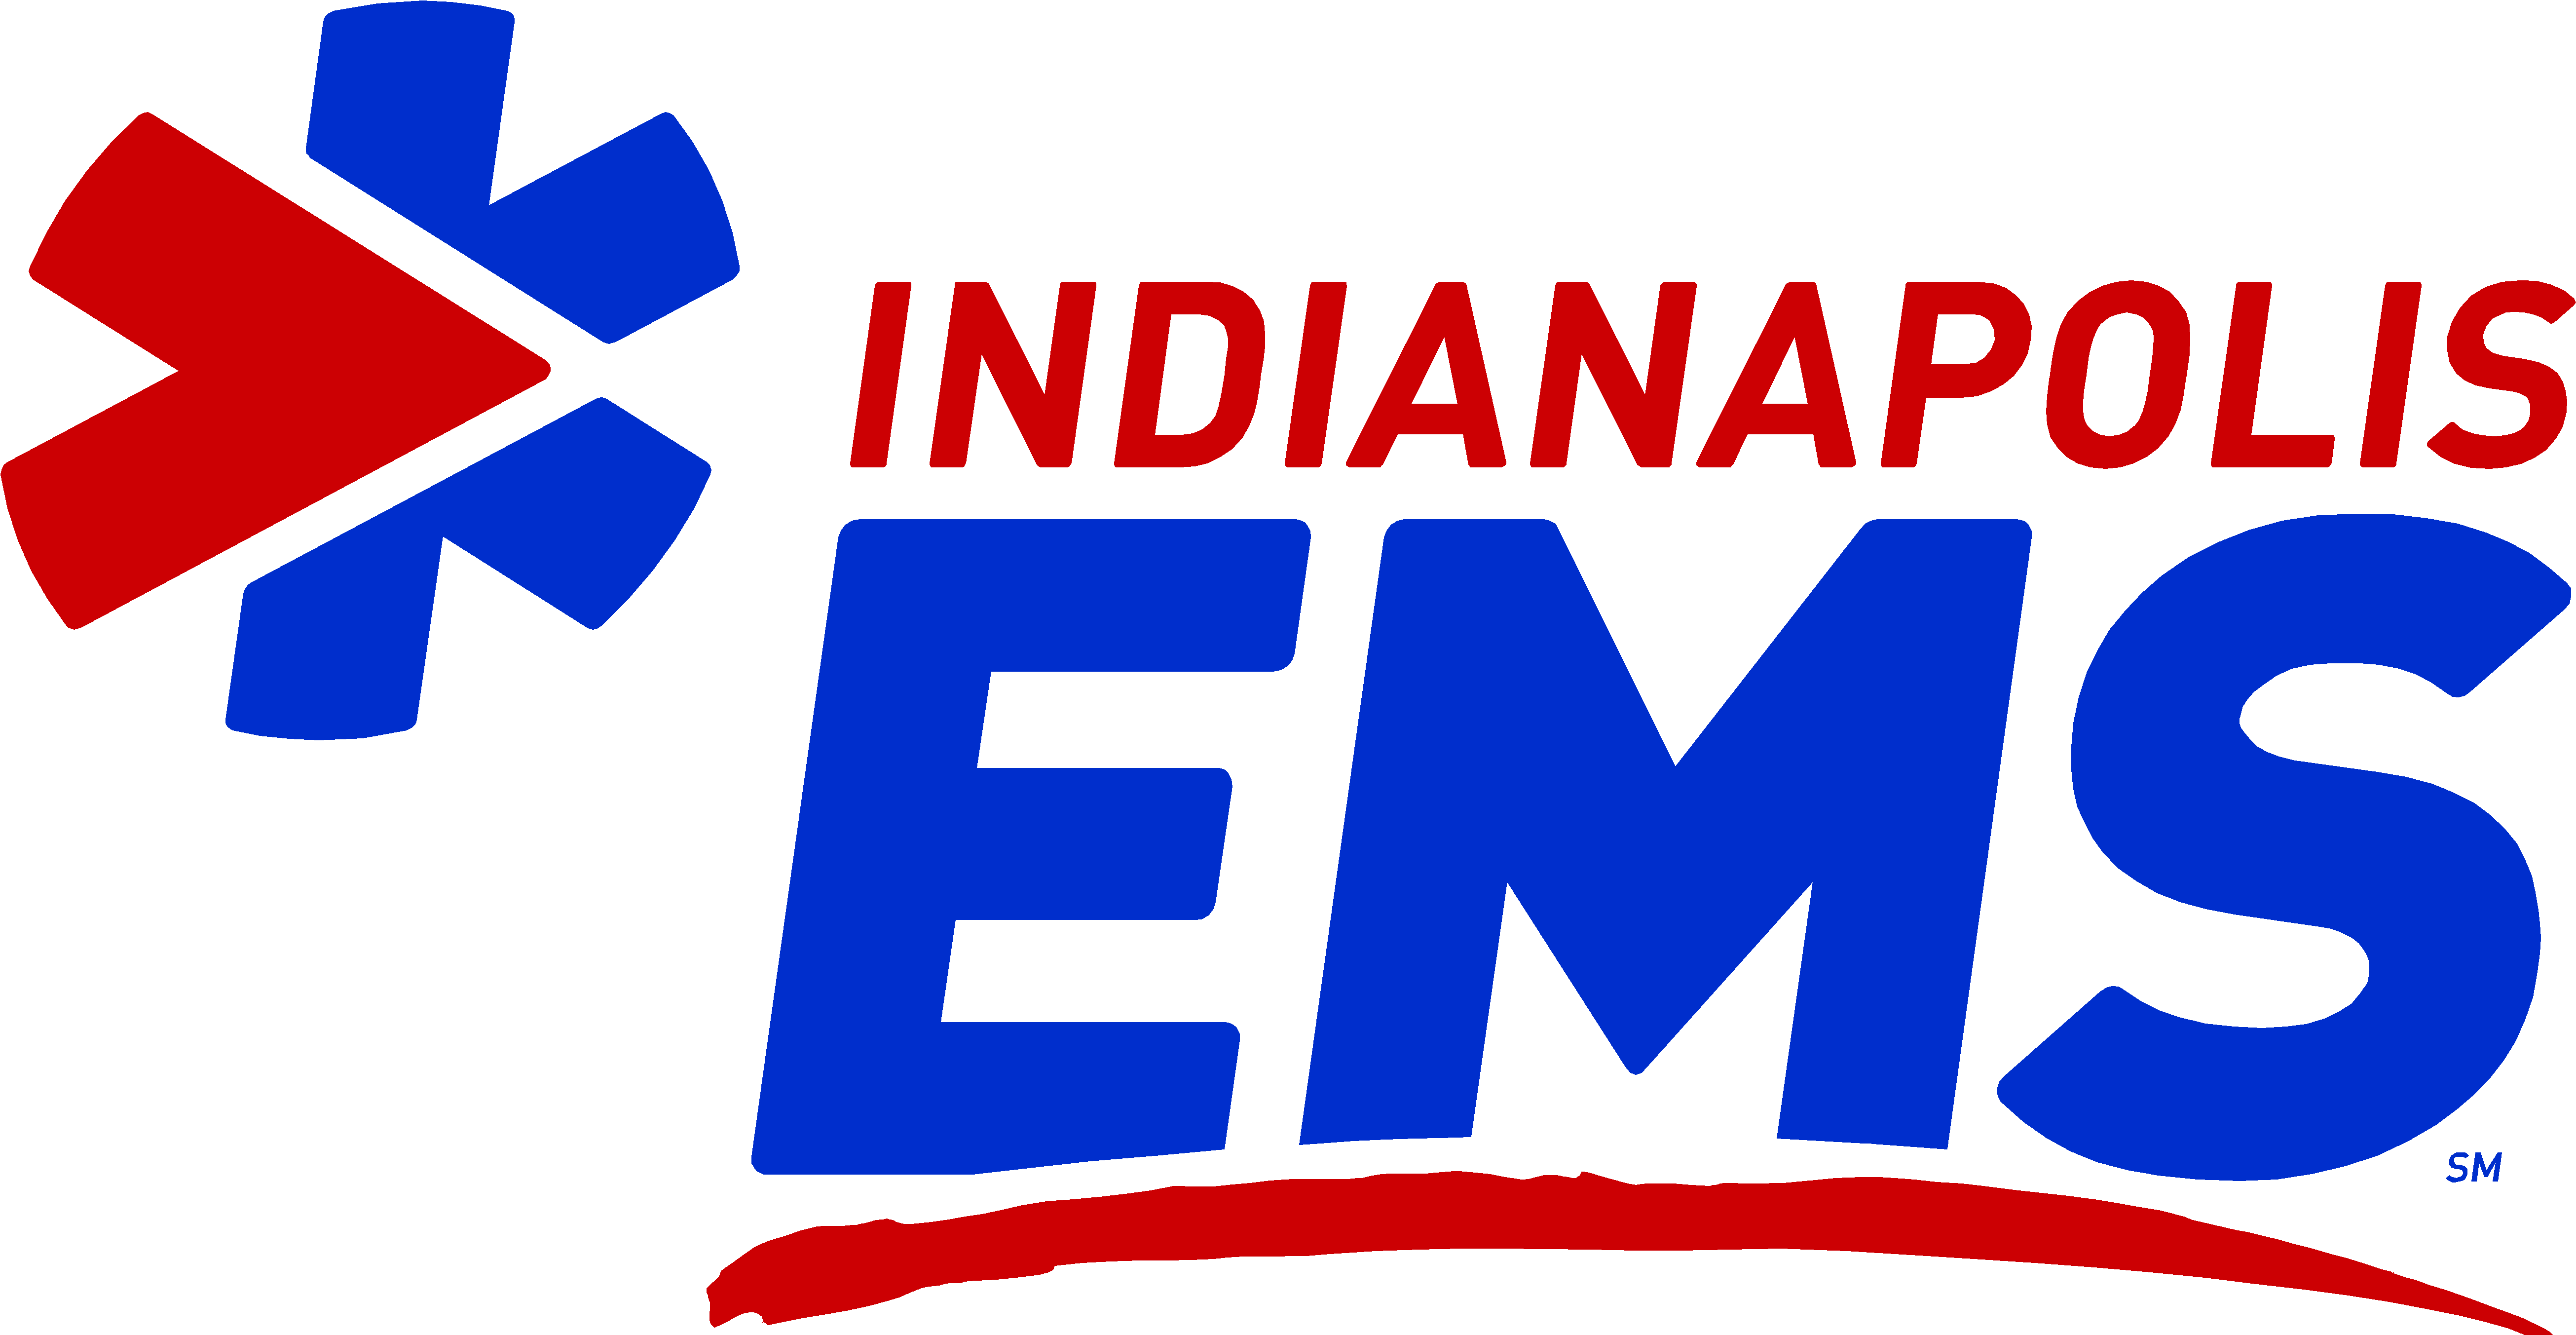 Ems Logo Indianapolis Emergency Medical Services - Indianapolis Emergency Medical Services (5222x2715)